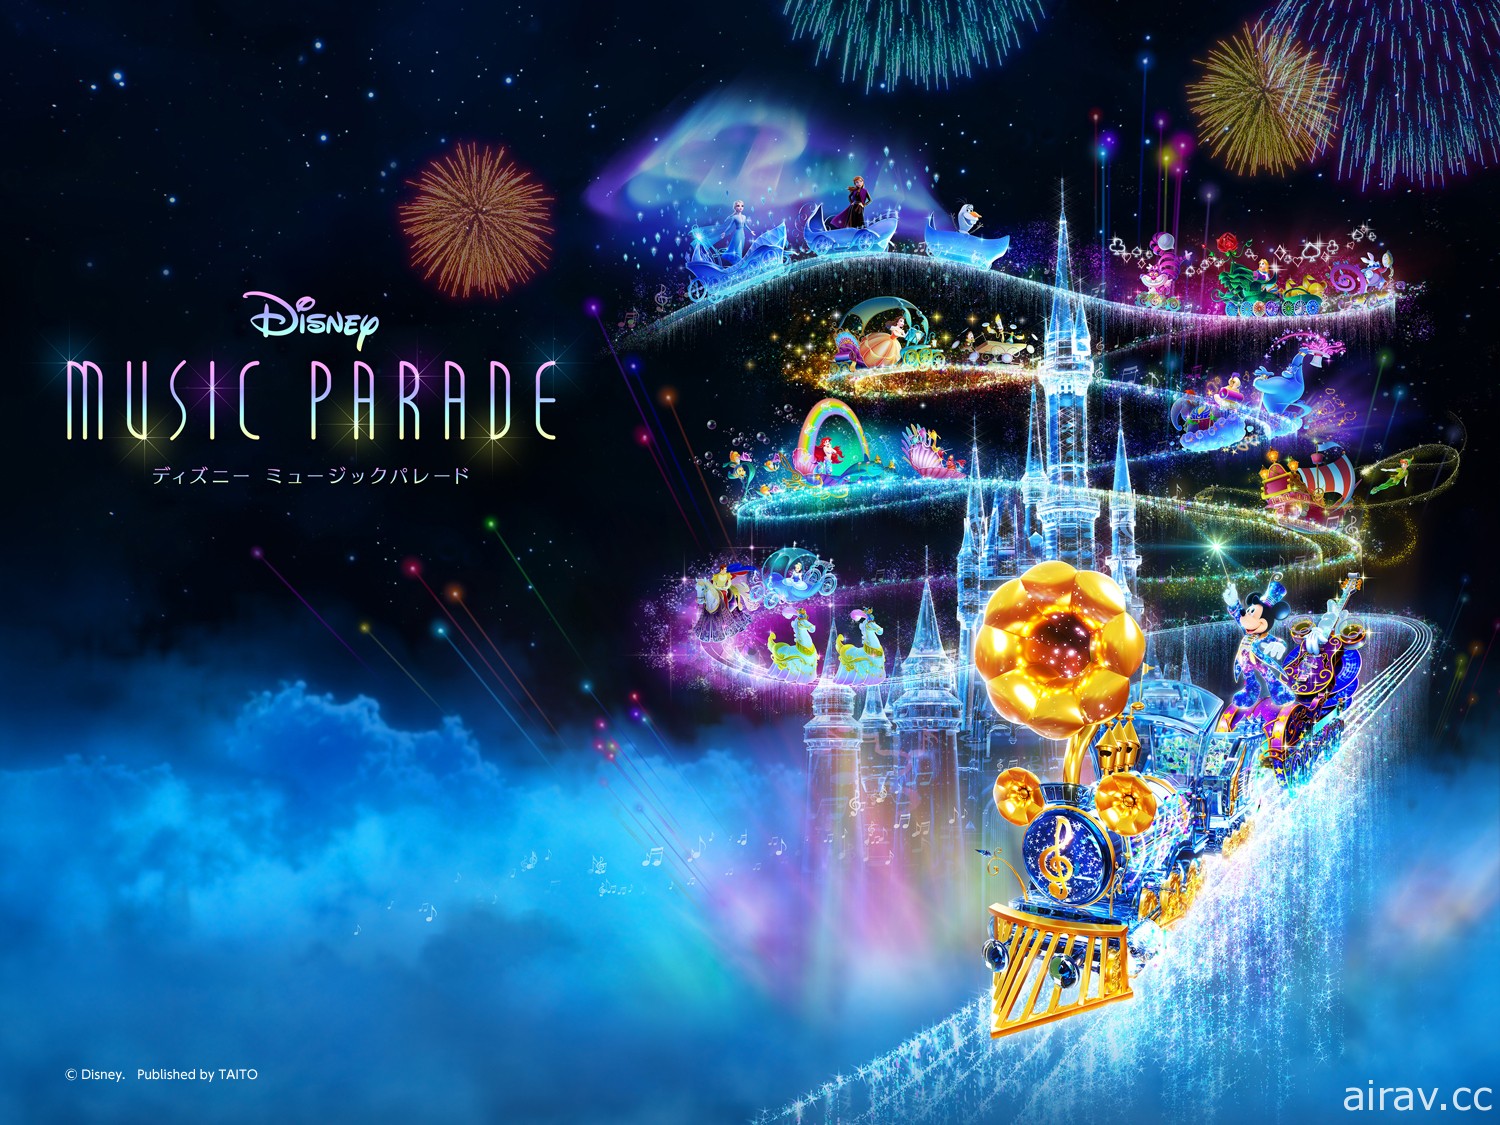 音樂節奏遊戲《迪士尼 音樂遊行》於日本上市 跟隨樂隊演奏迪士尼樂曲